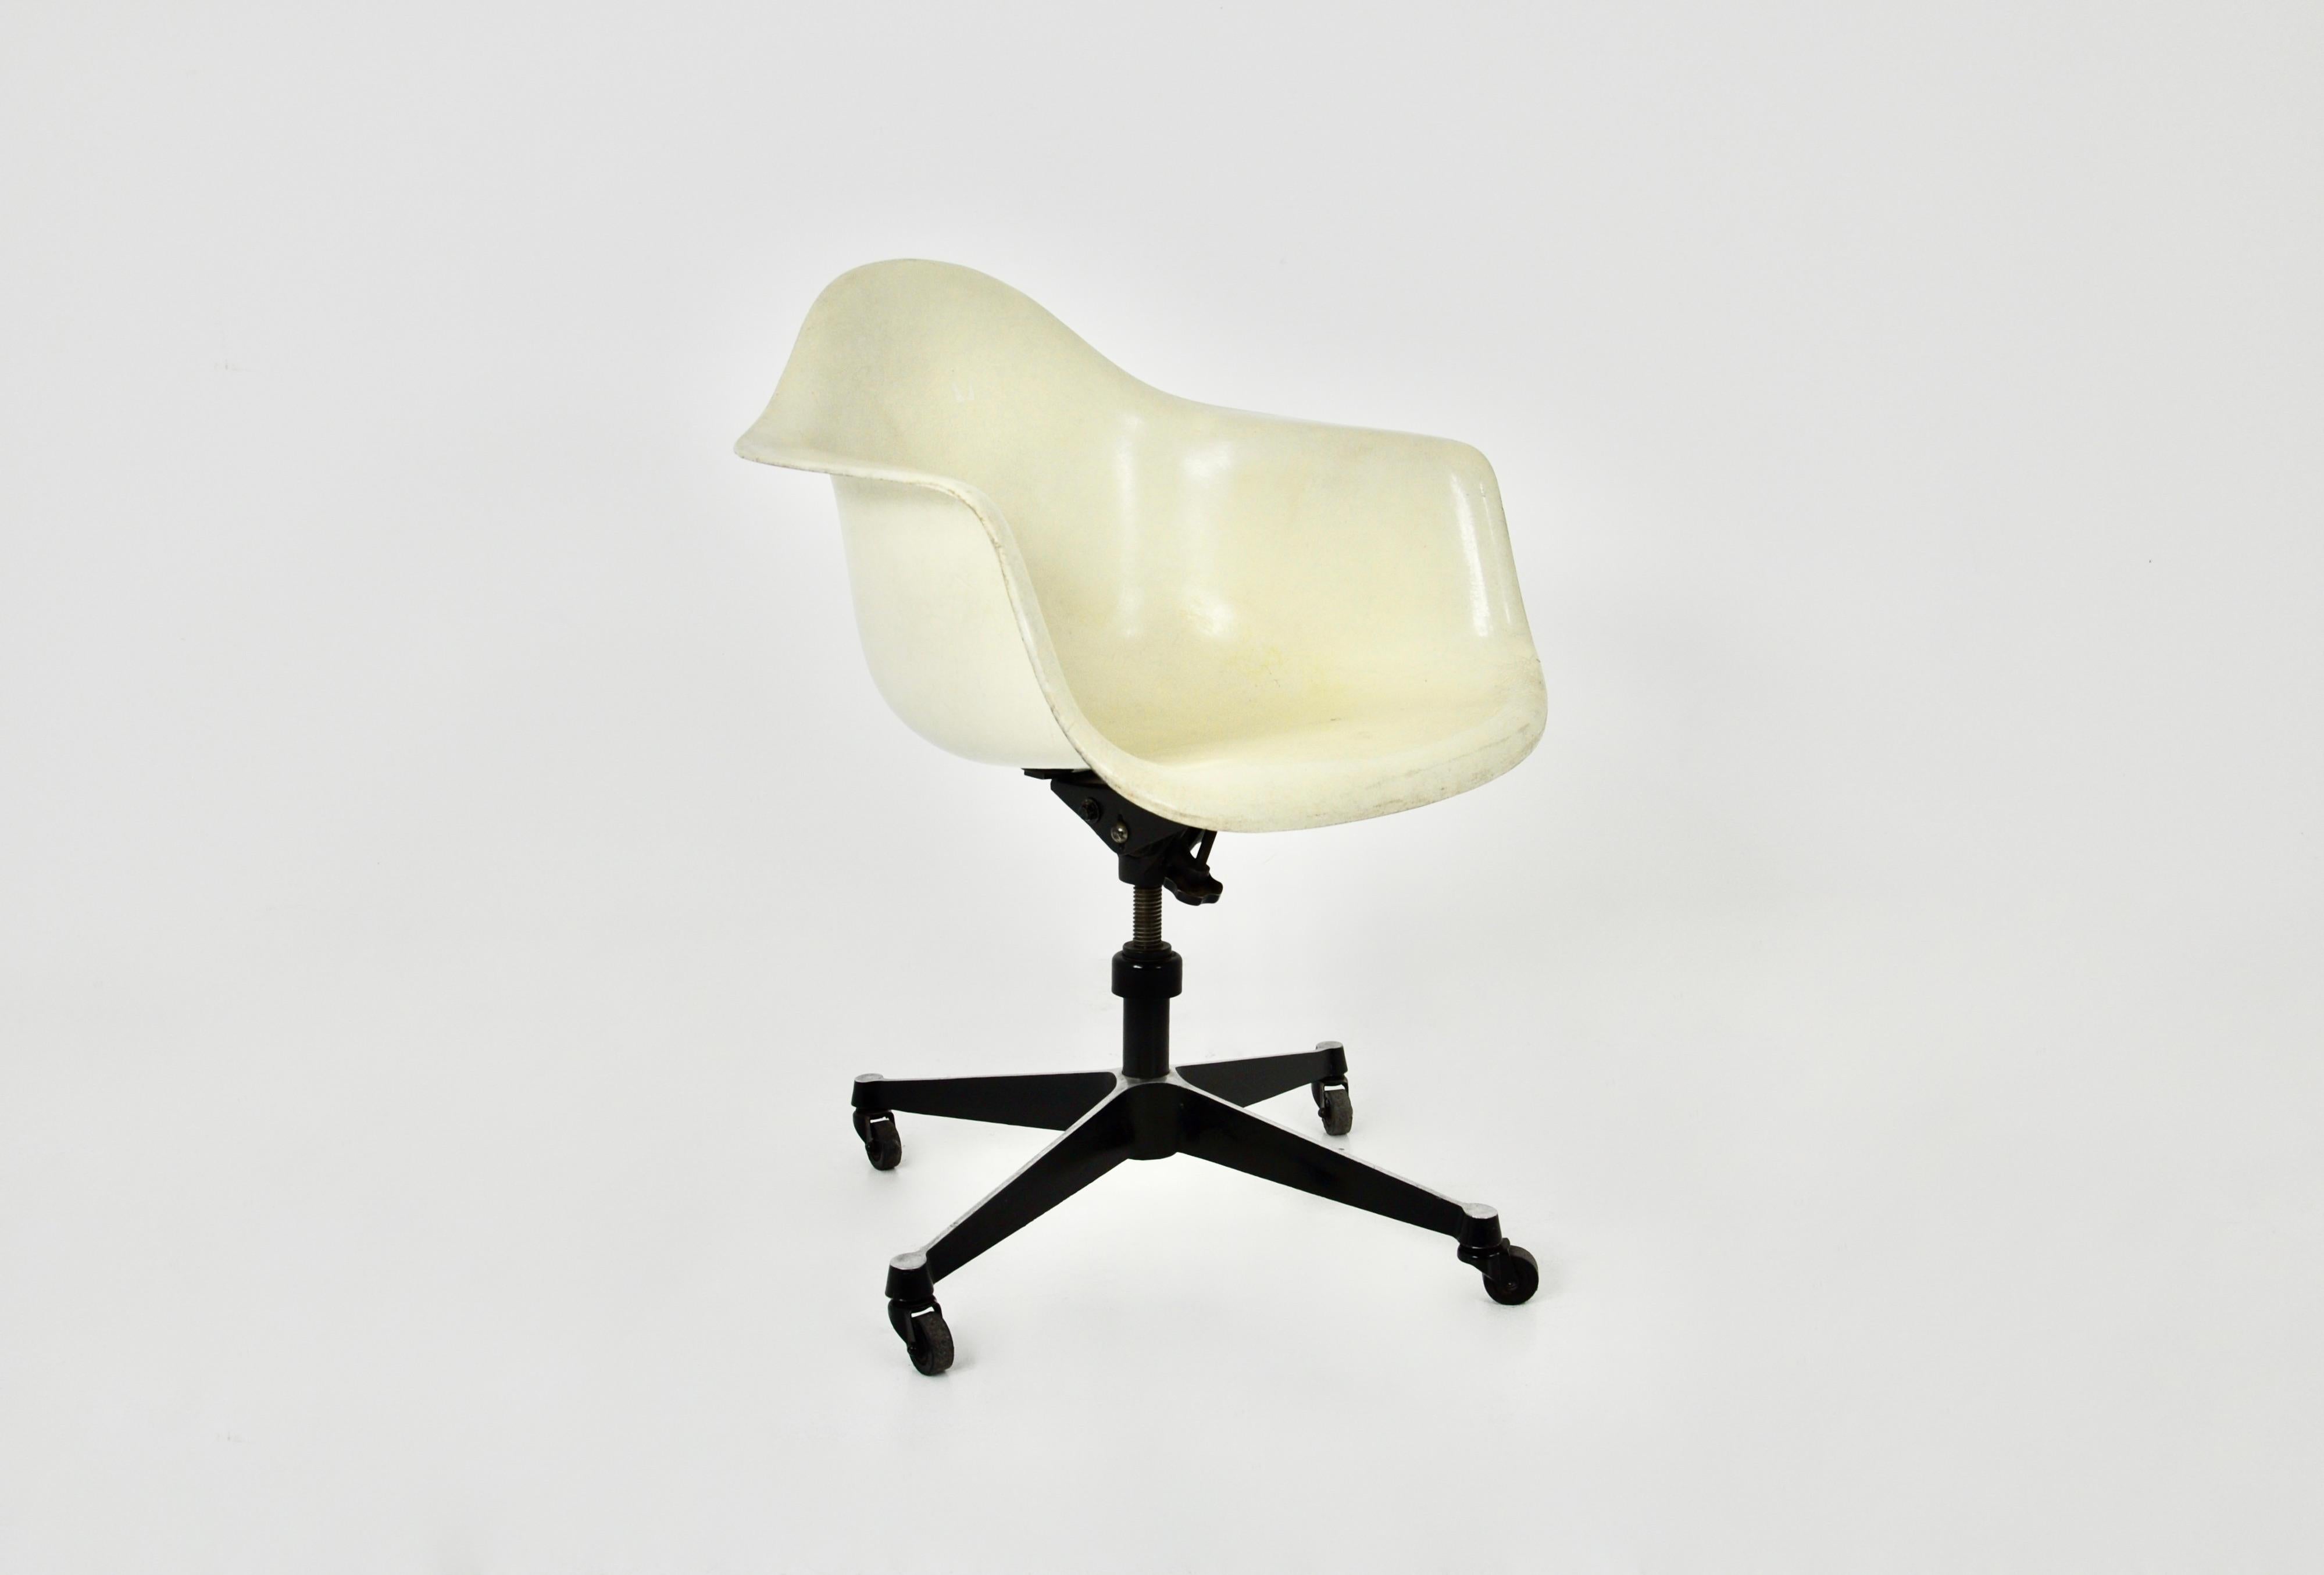 Chaise pivotante sur roulettes en métal et fibre de verre. Usure due au temps et à l'âge de la chaise (voir photo). 
Hauteur d'assise réglable.